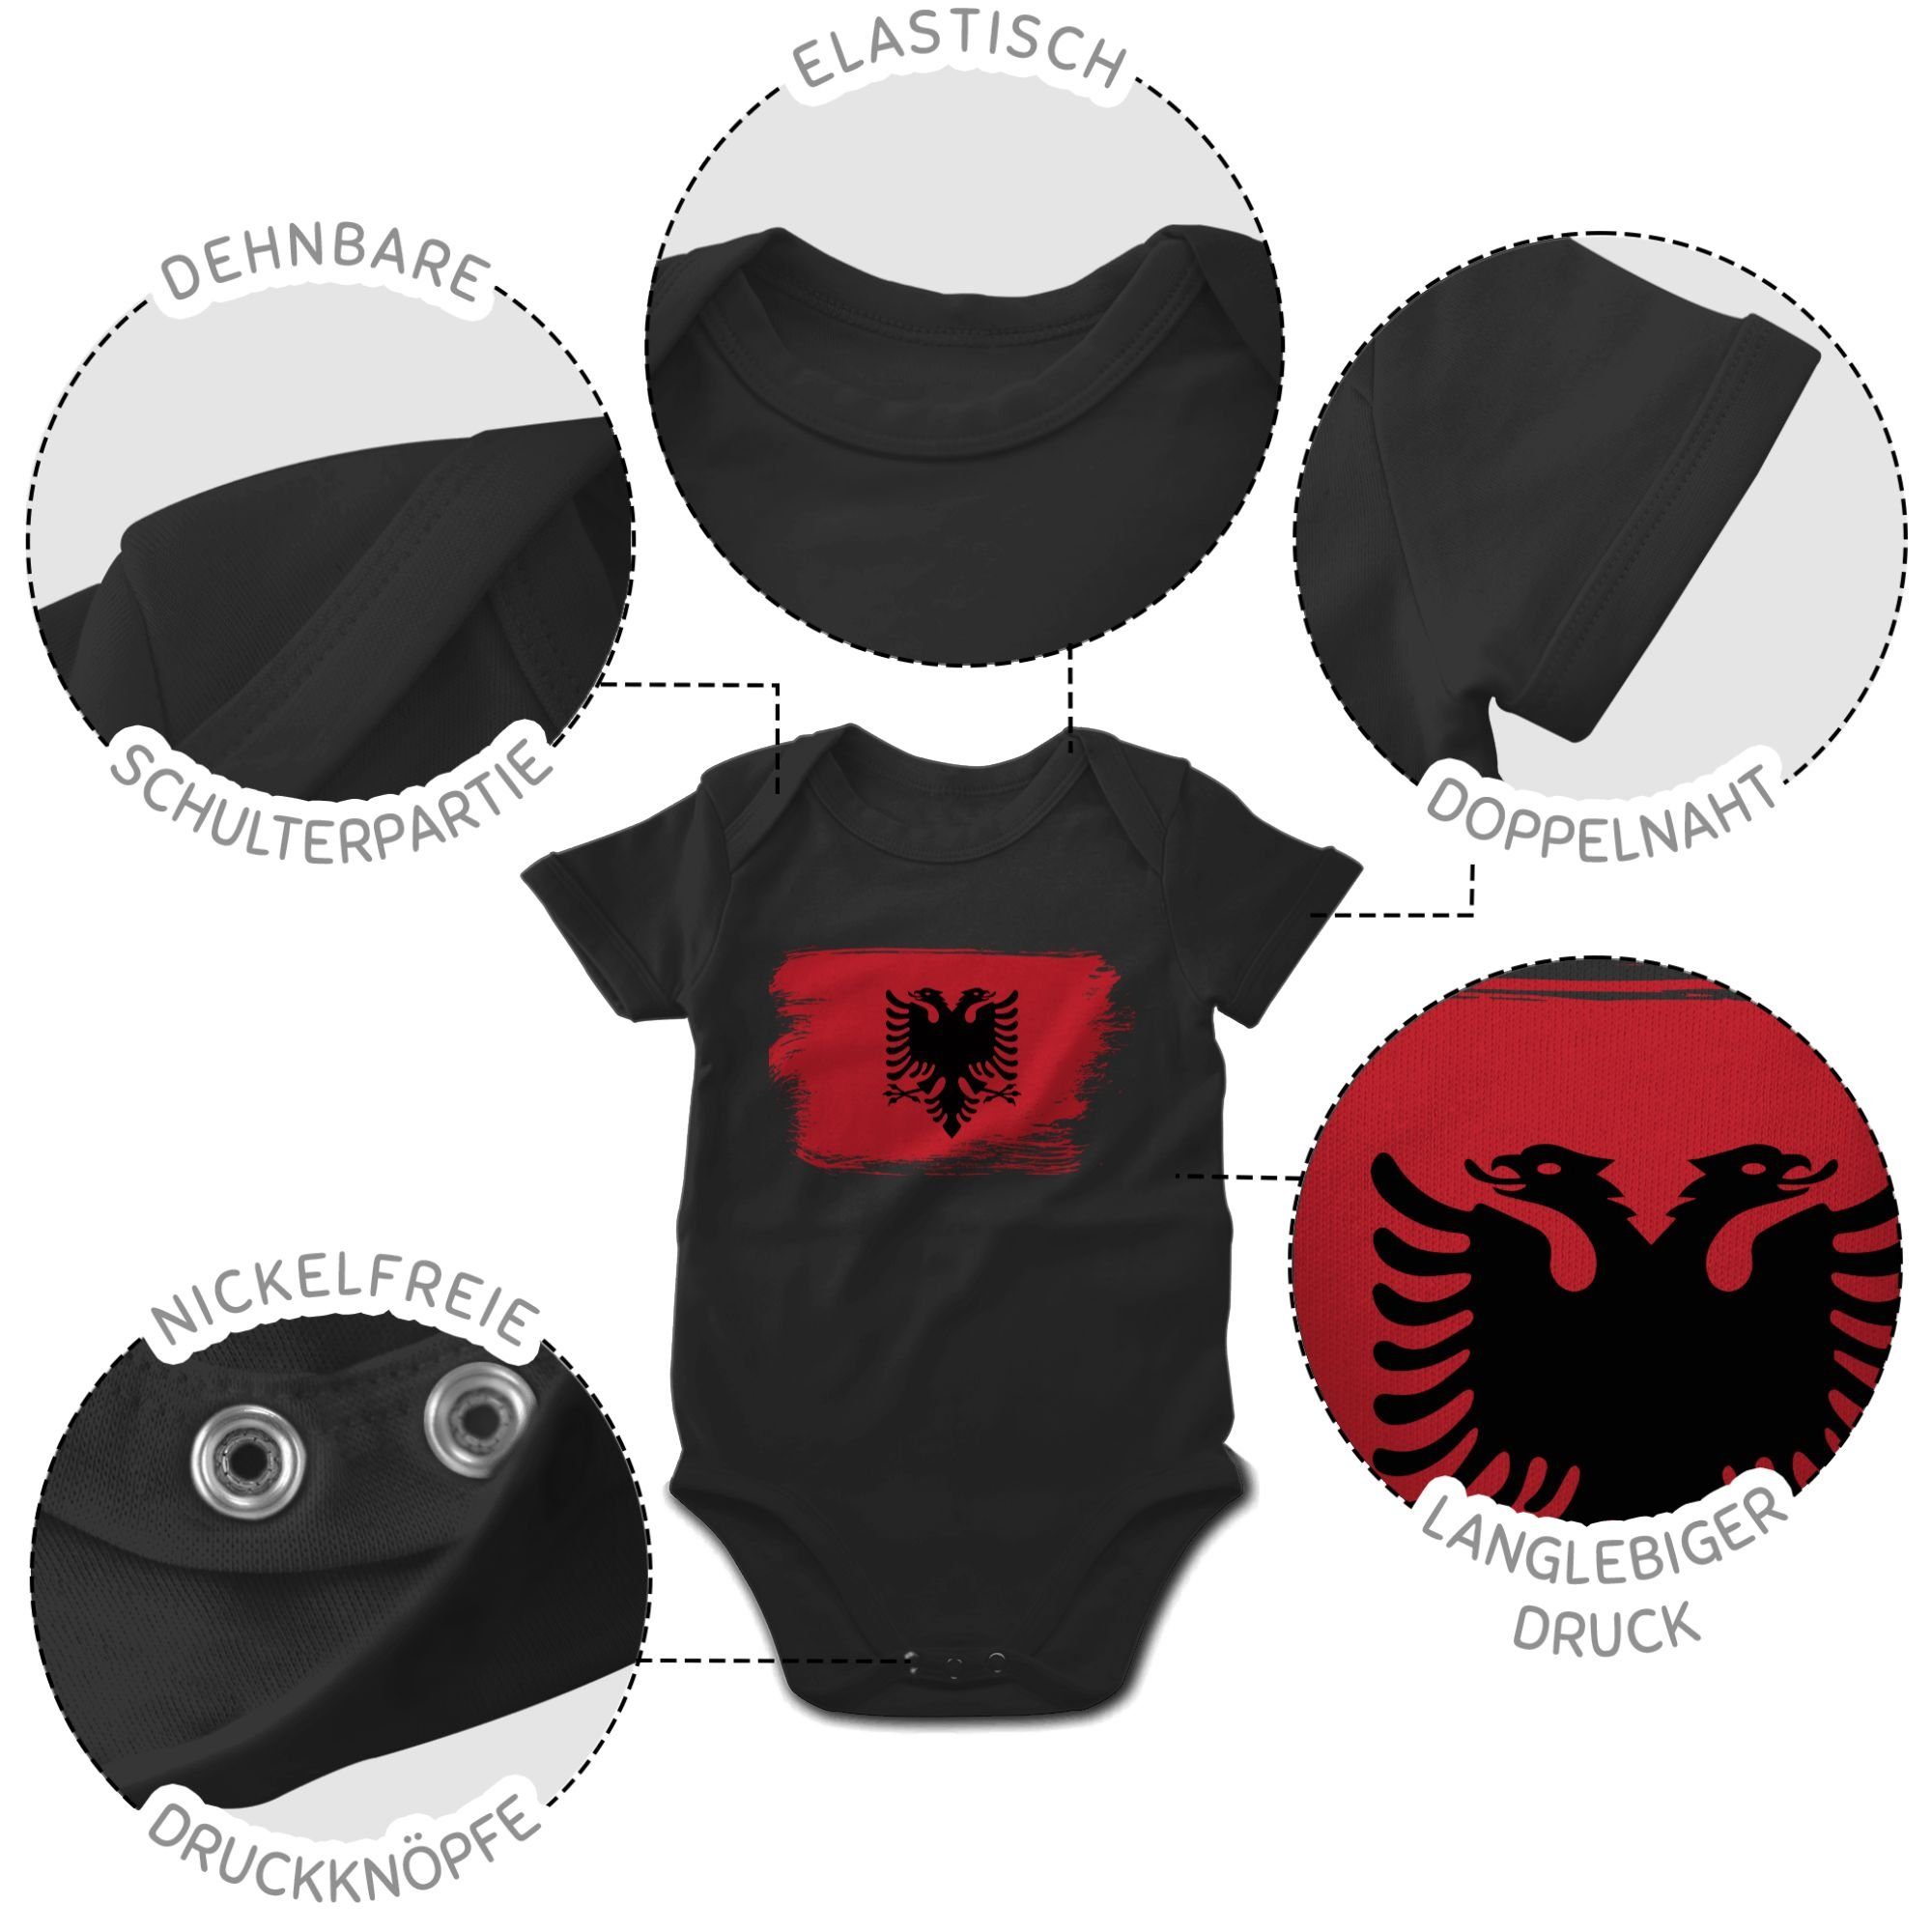 Shirtracer Shirtbody Albanien 1 Flagge Wappen Länder Baby Schwarz Vintage